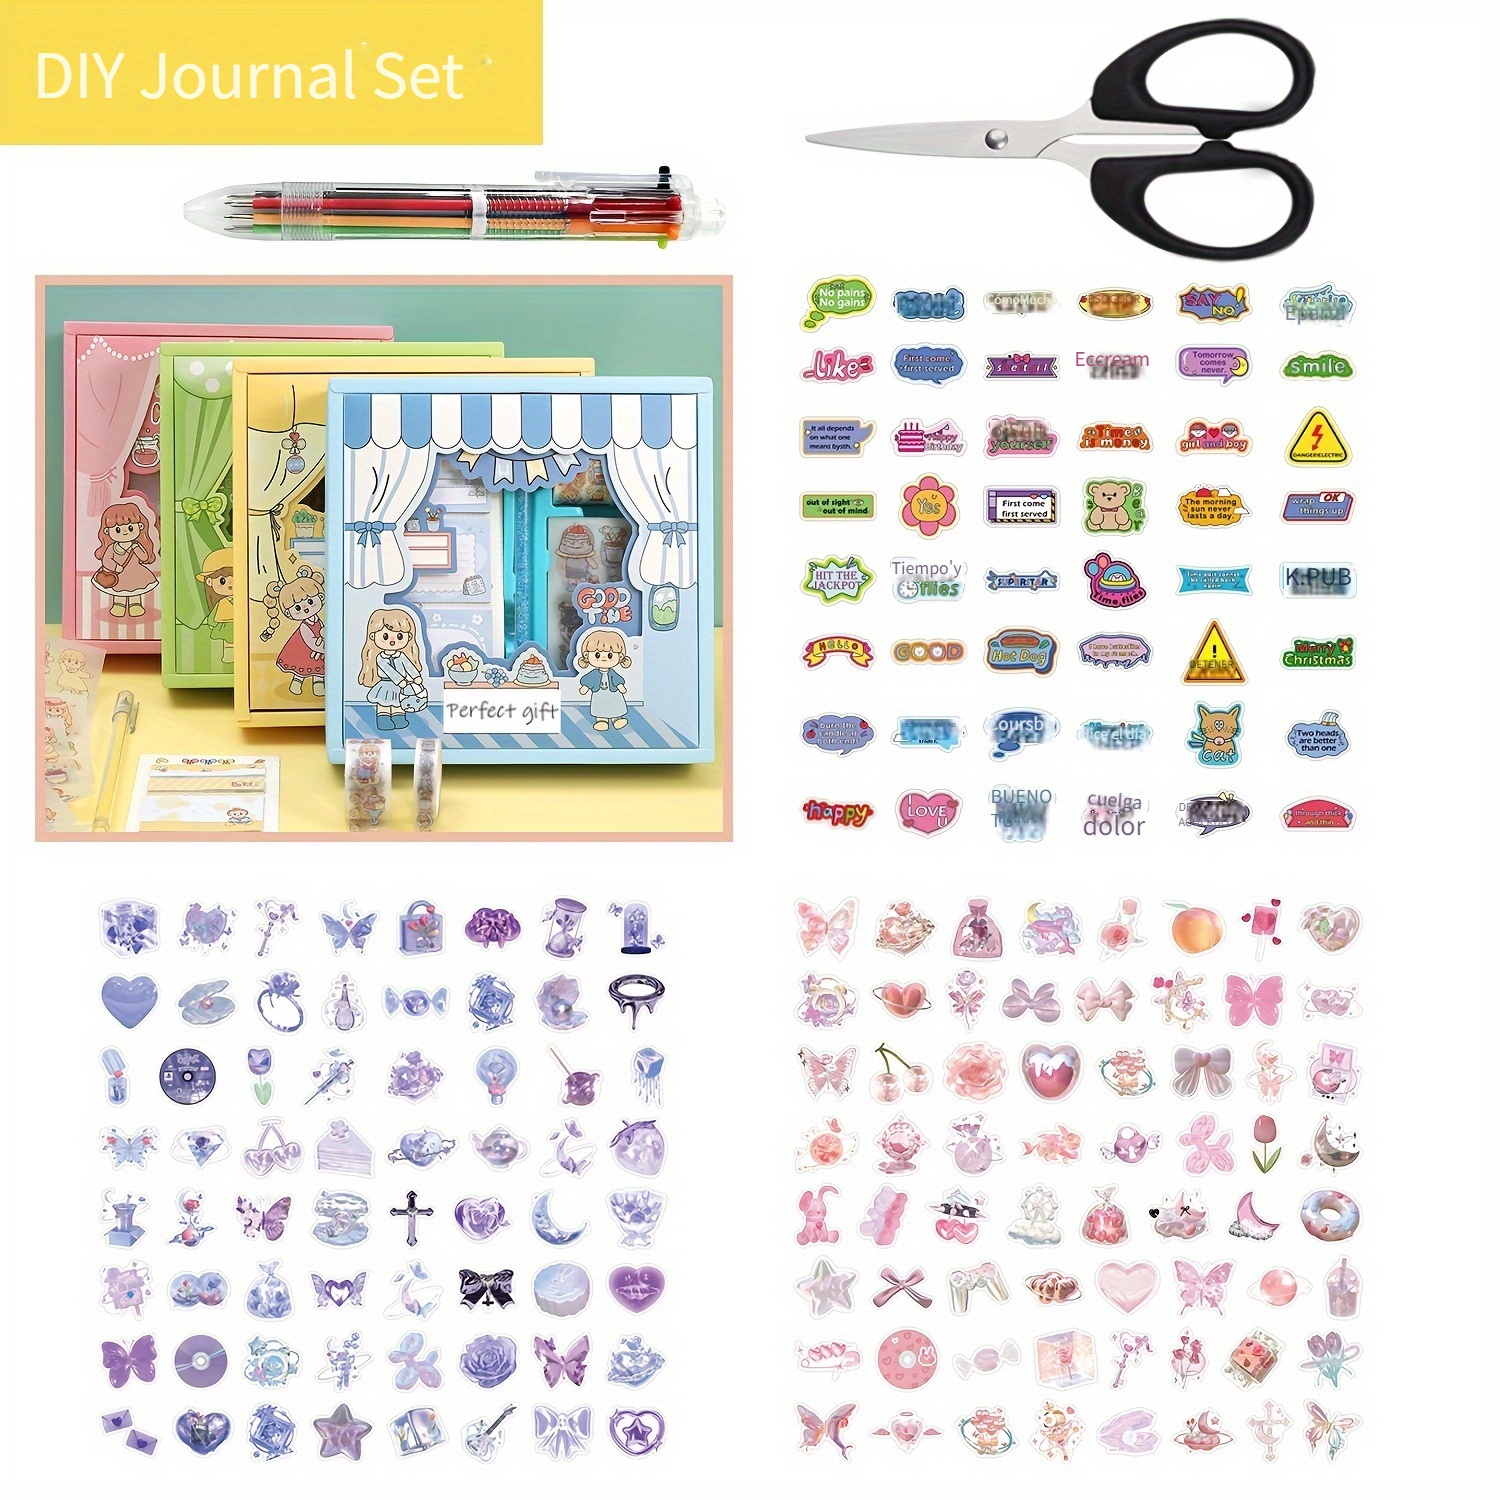  Pretty Me Kit de collage de pared para adolescentes y  adolescentes – Ideas de regalo de manualidades para niñas de 11, 12, 13,  14, 15, 16 años – Regalos de cumpleaños